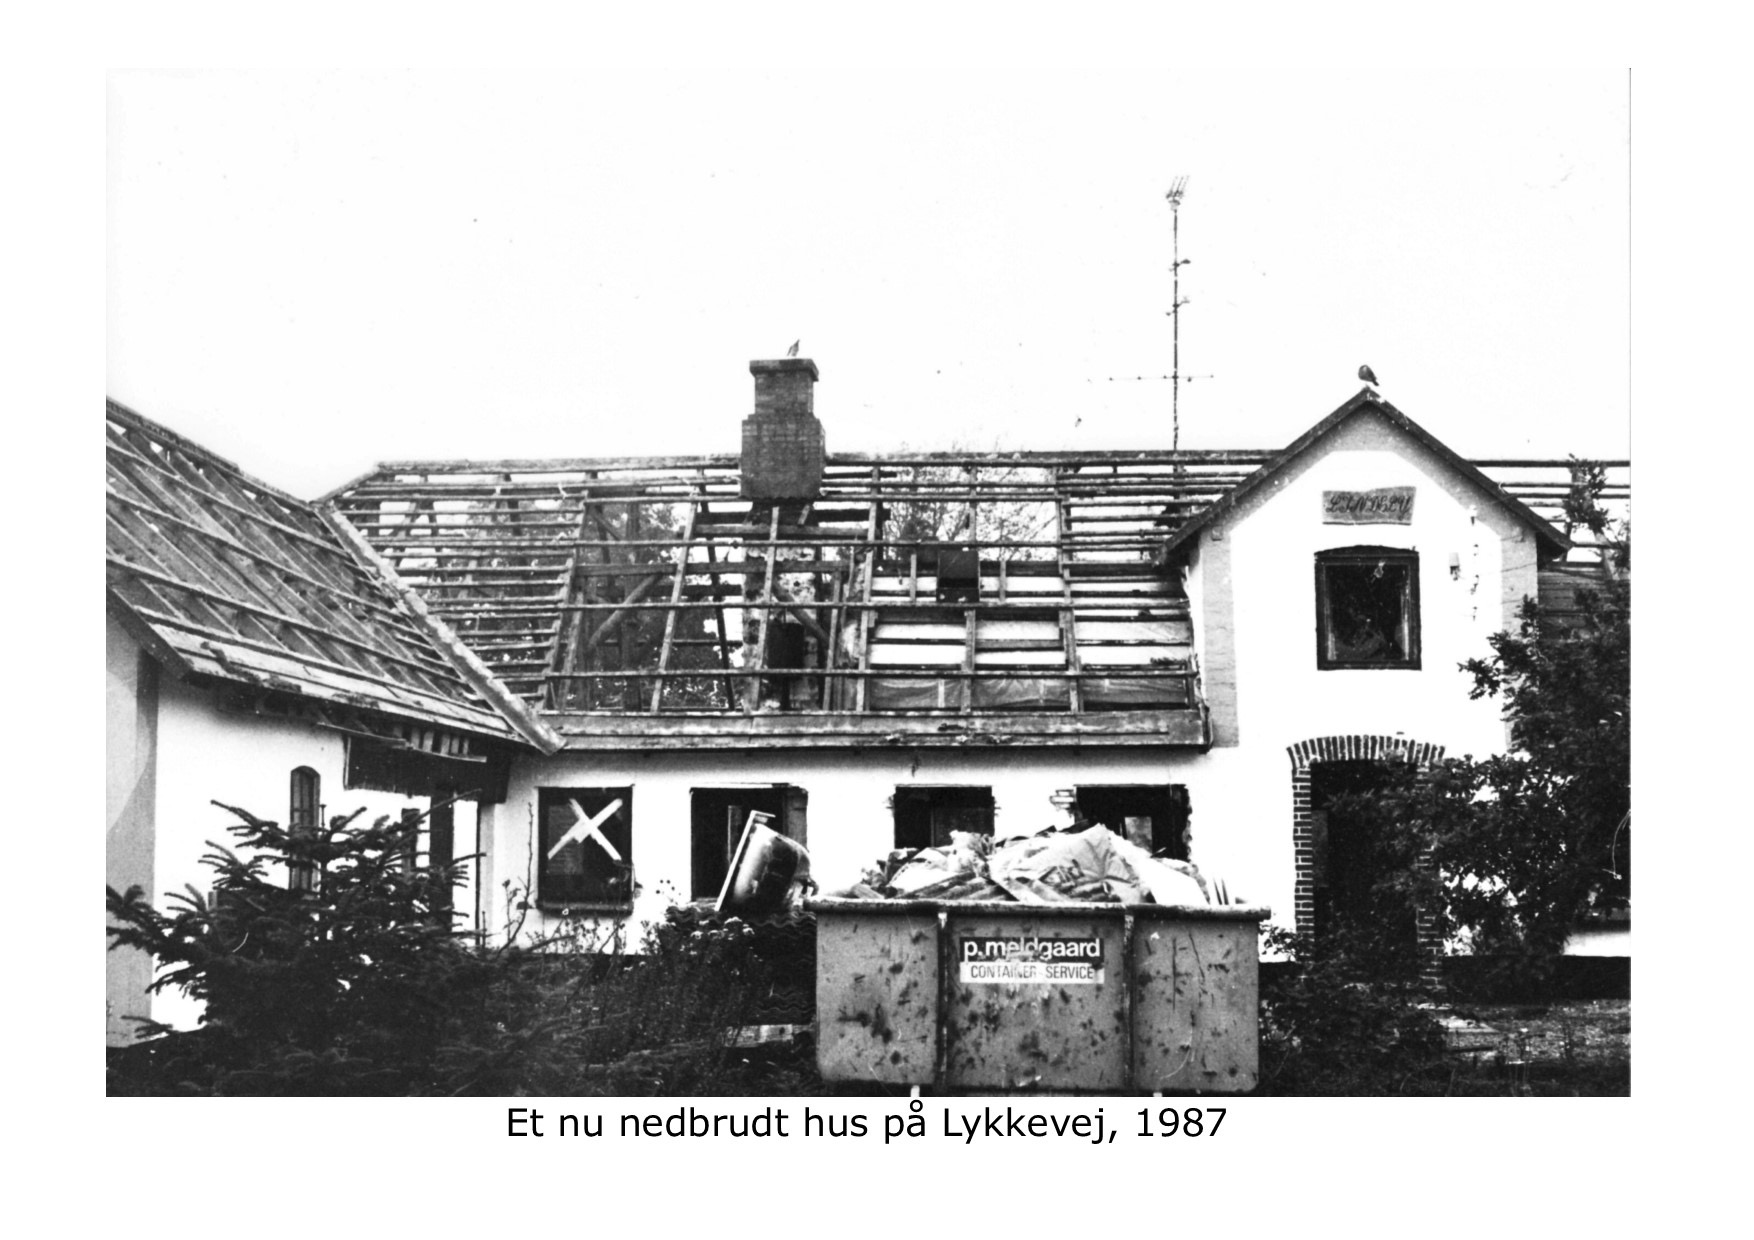 Nedbrudt hus på Lykkevej 1987 